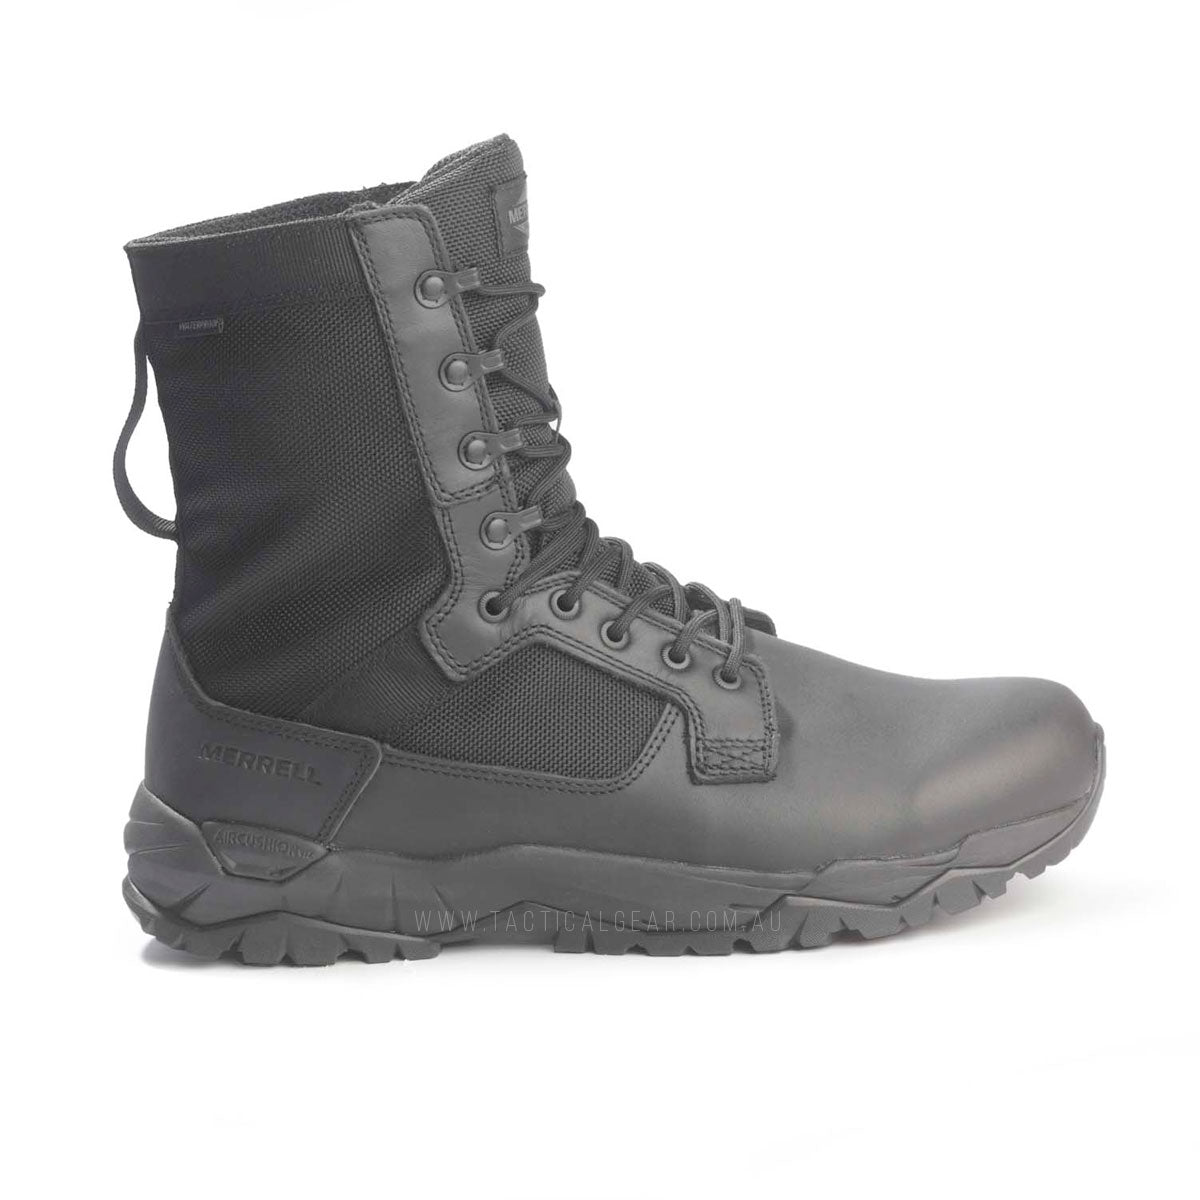 Merrell MQC Patrol Waterproof Tactical Boots Black J099351 Tactical Gear